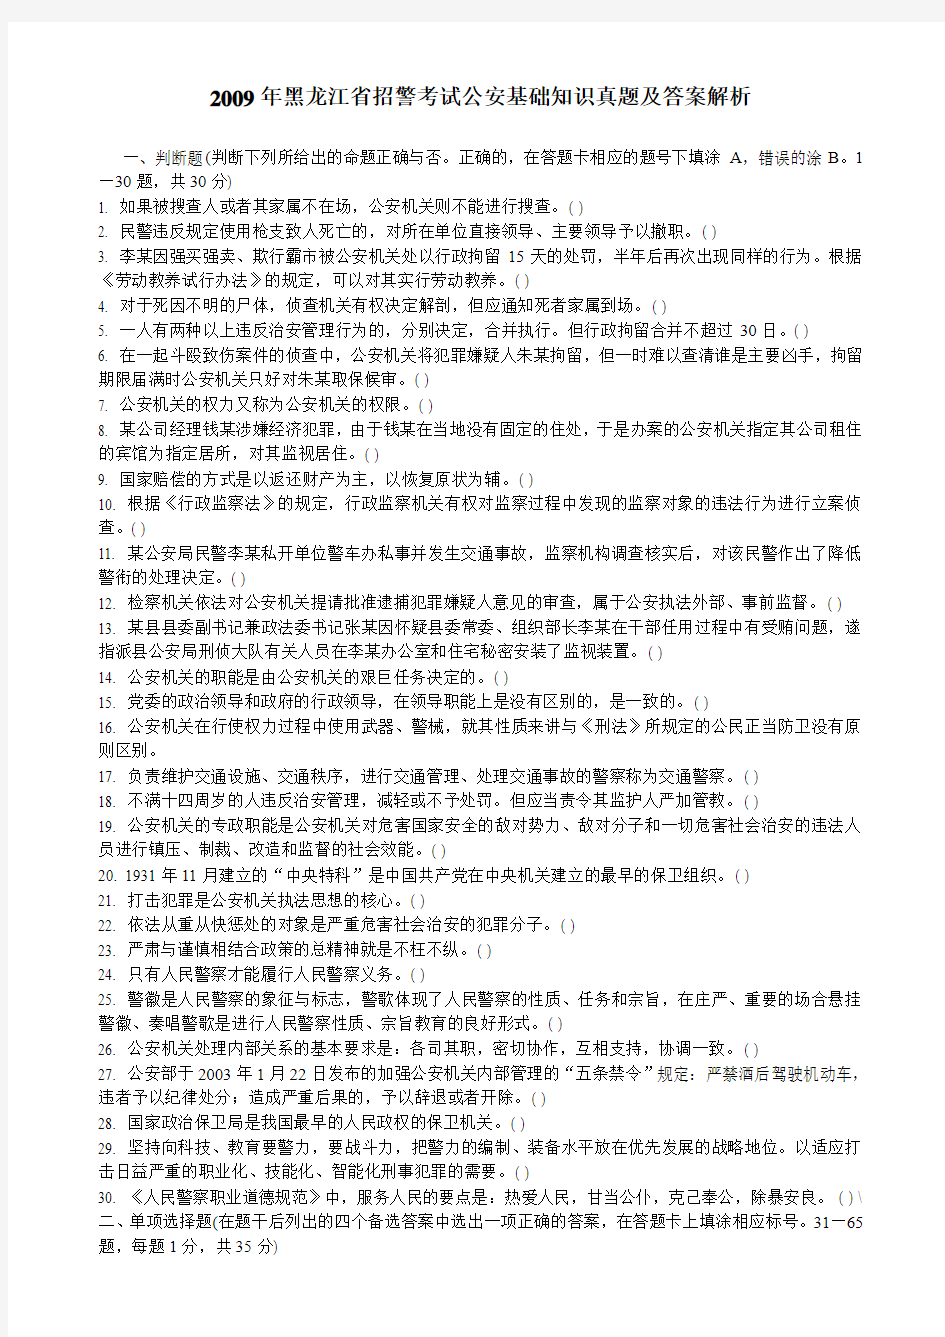 2009年黑龙江省招警考试公安基础知识真题及答案解析